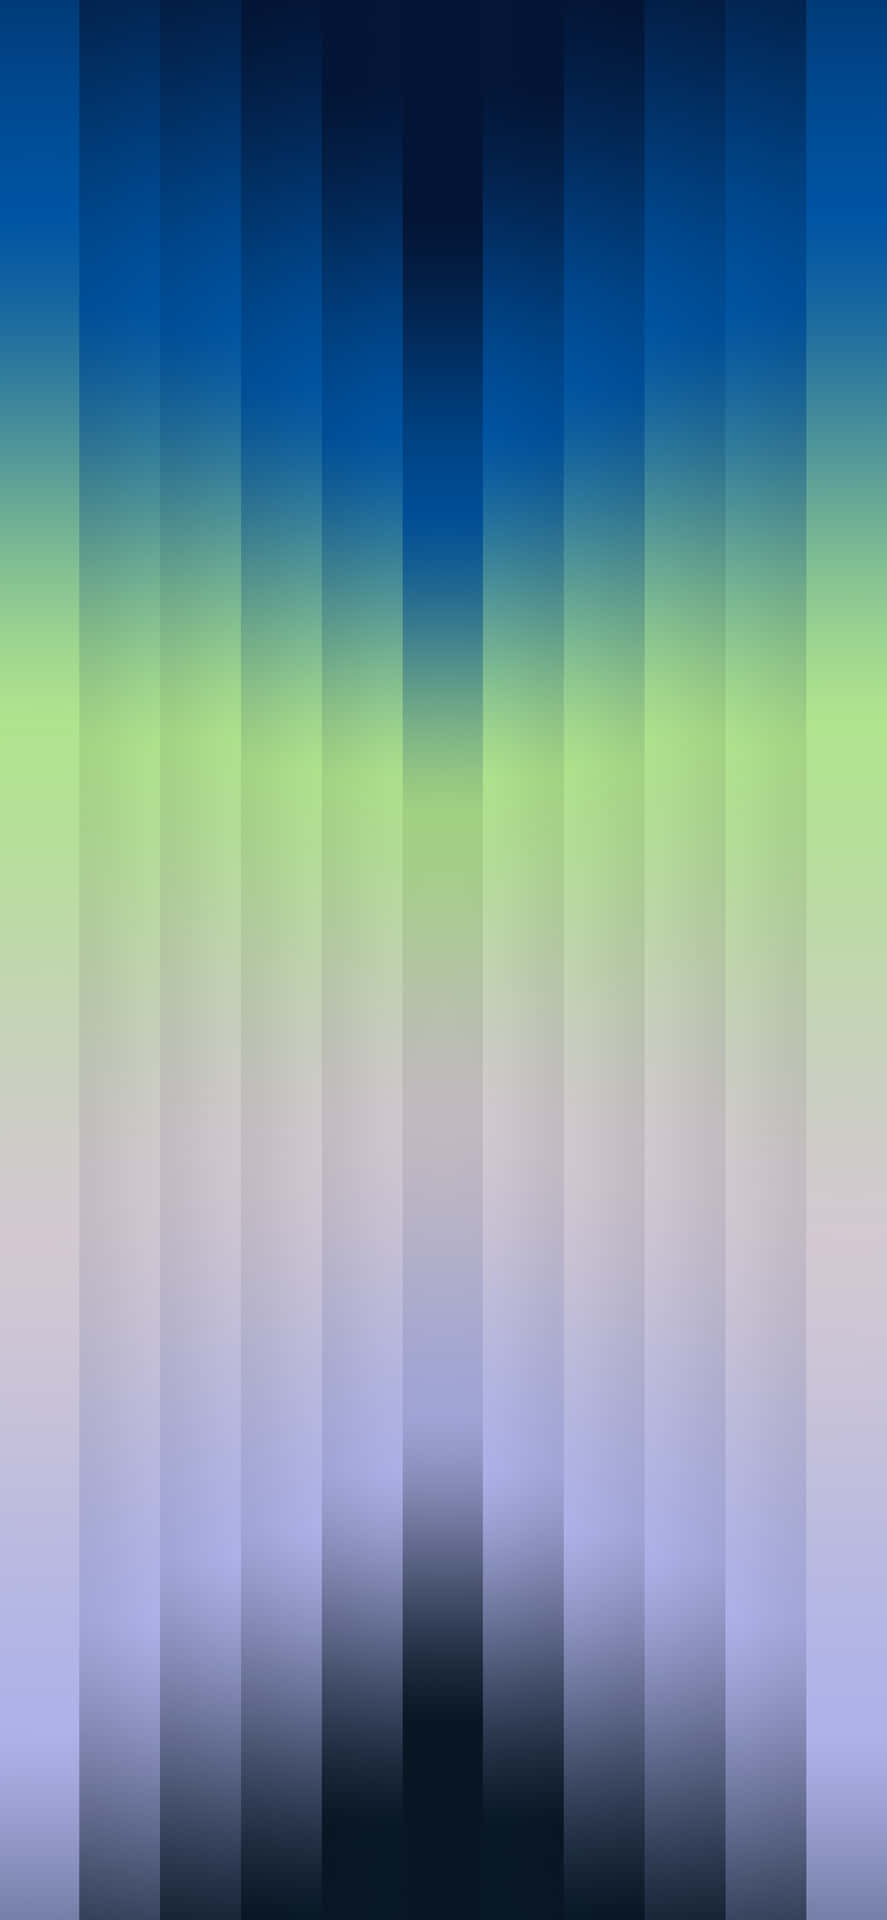 Blå, grøn og lilla striber til iOS 3 Wallpaper